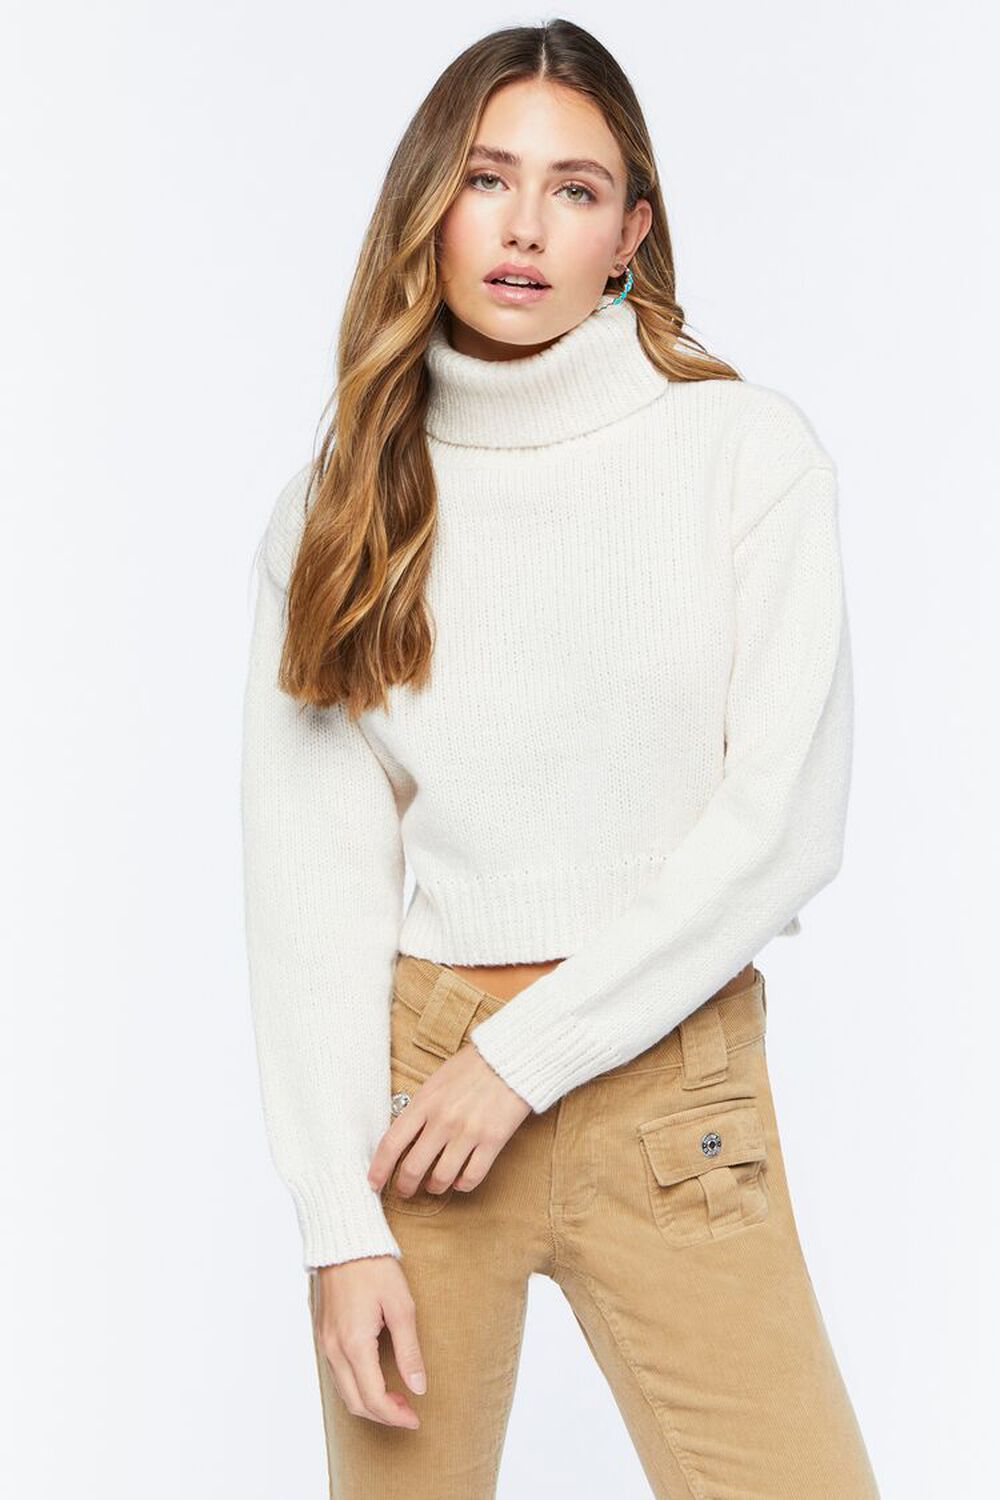 WHITE Turtleneck Marled Sweater, image 1